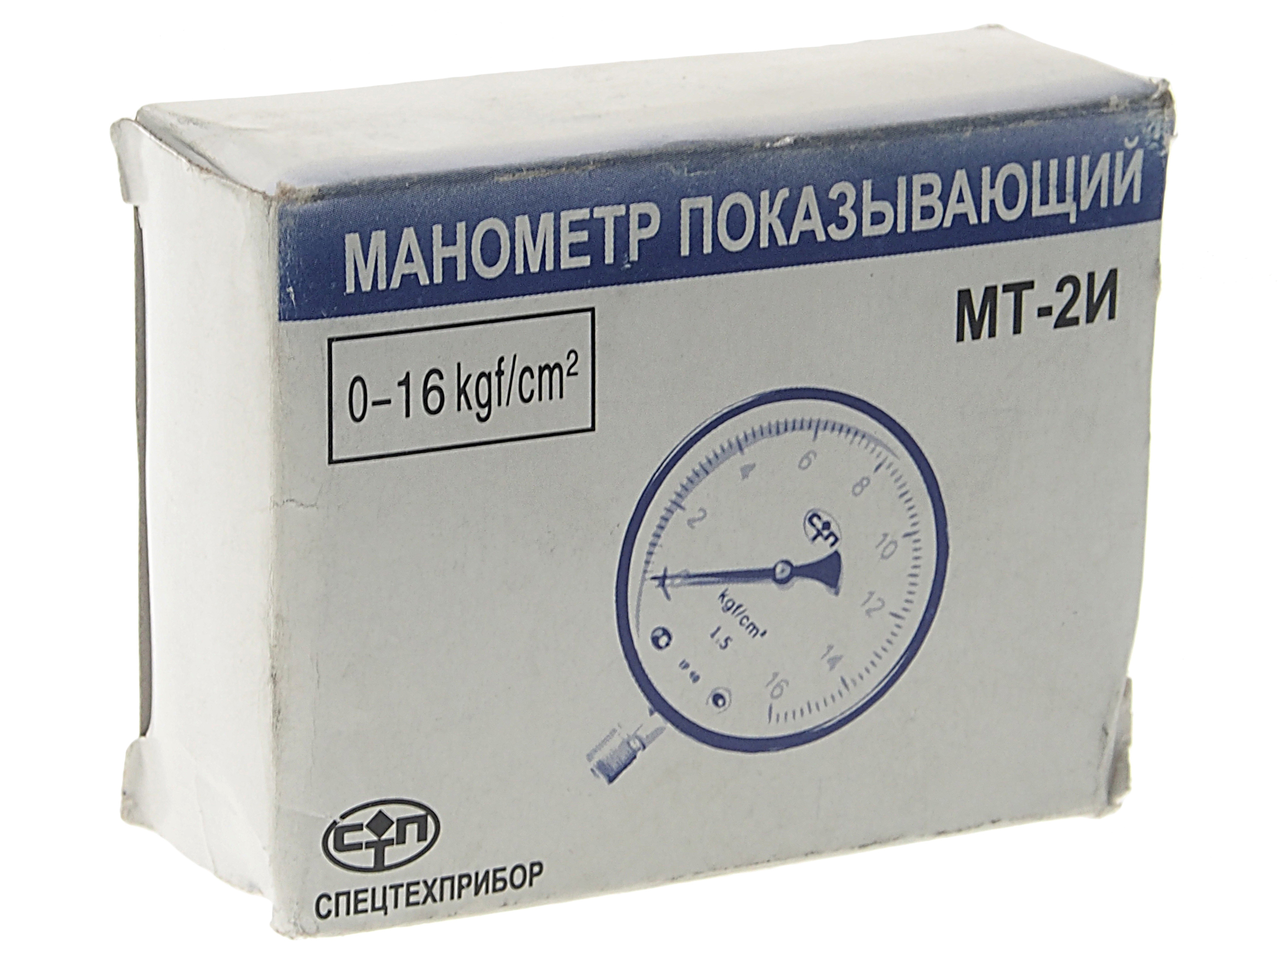 Манометр КС-3577 низкого давления МТП-1М,МТ-2И 1.6МПа, ТМ-310Р.00(1,6МРа), NO NAME